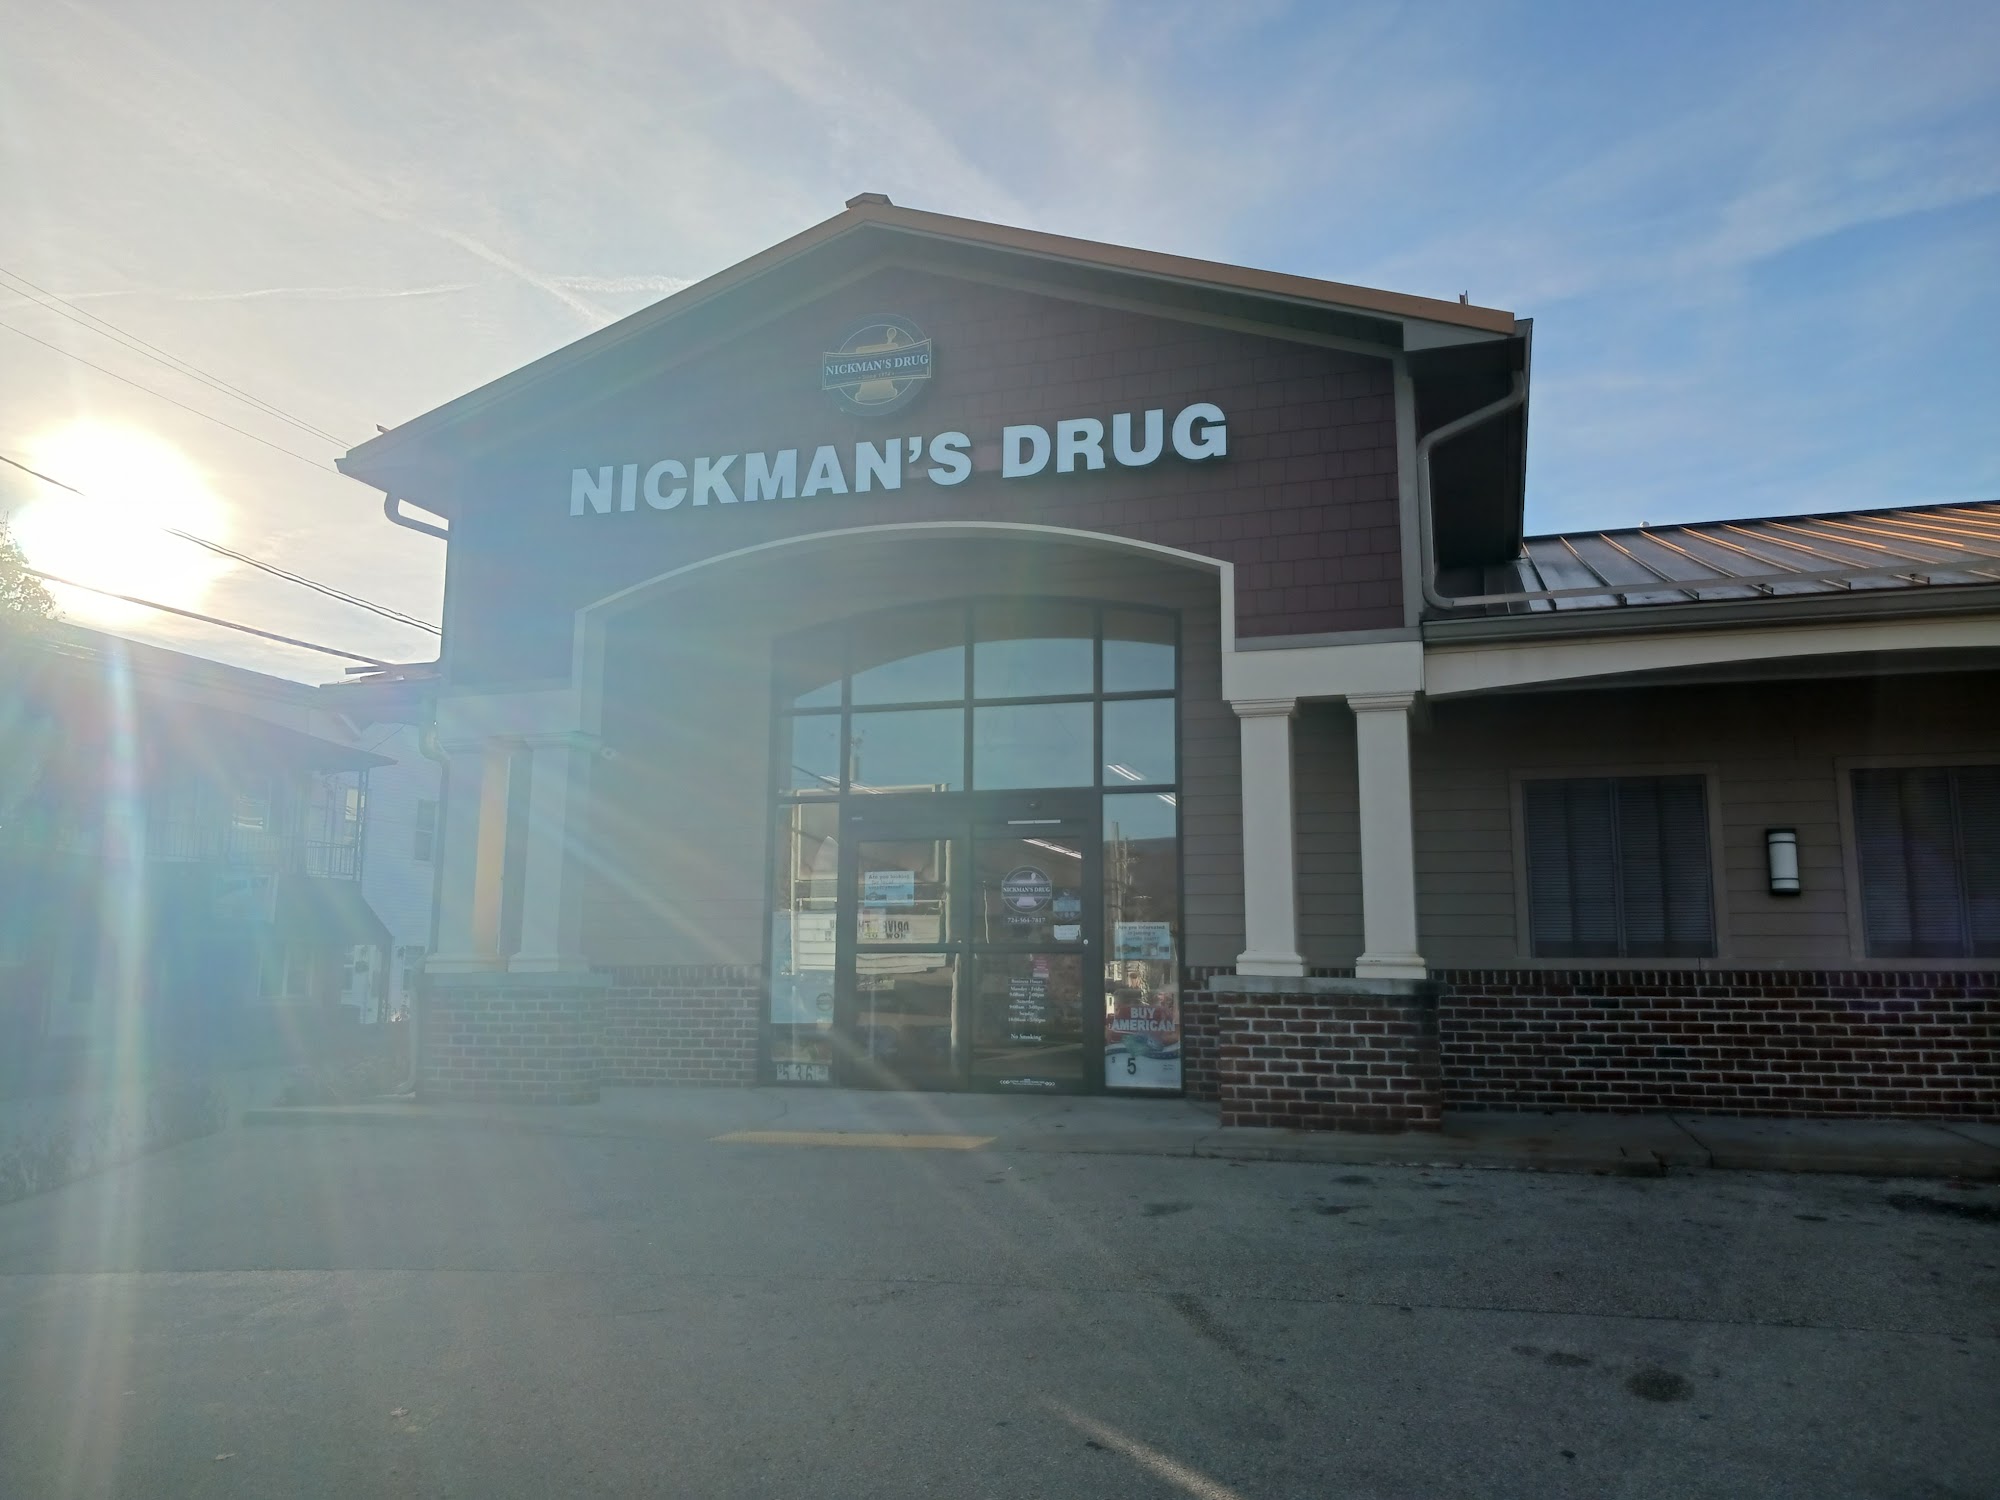 Nickman's Drug